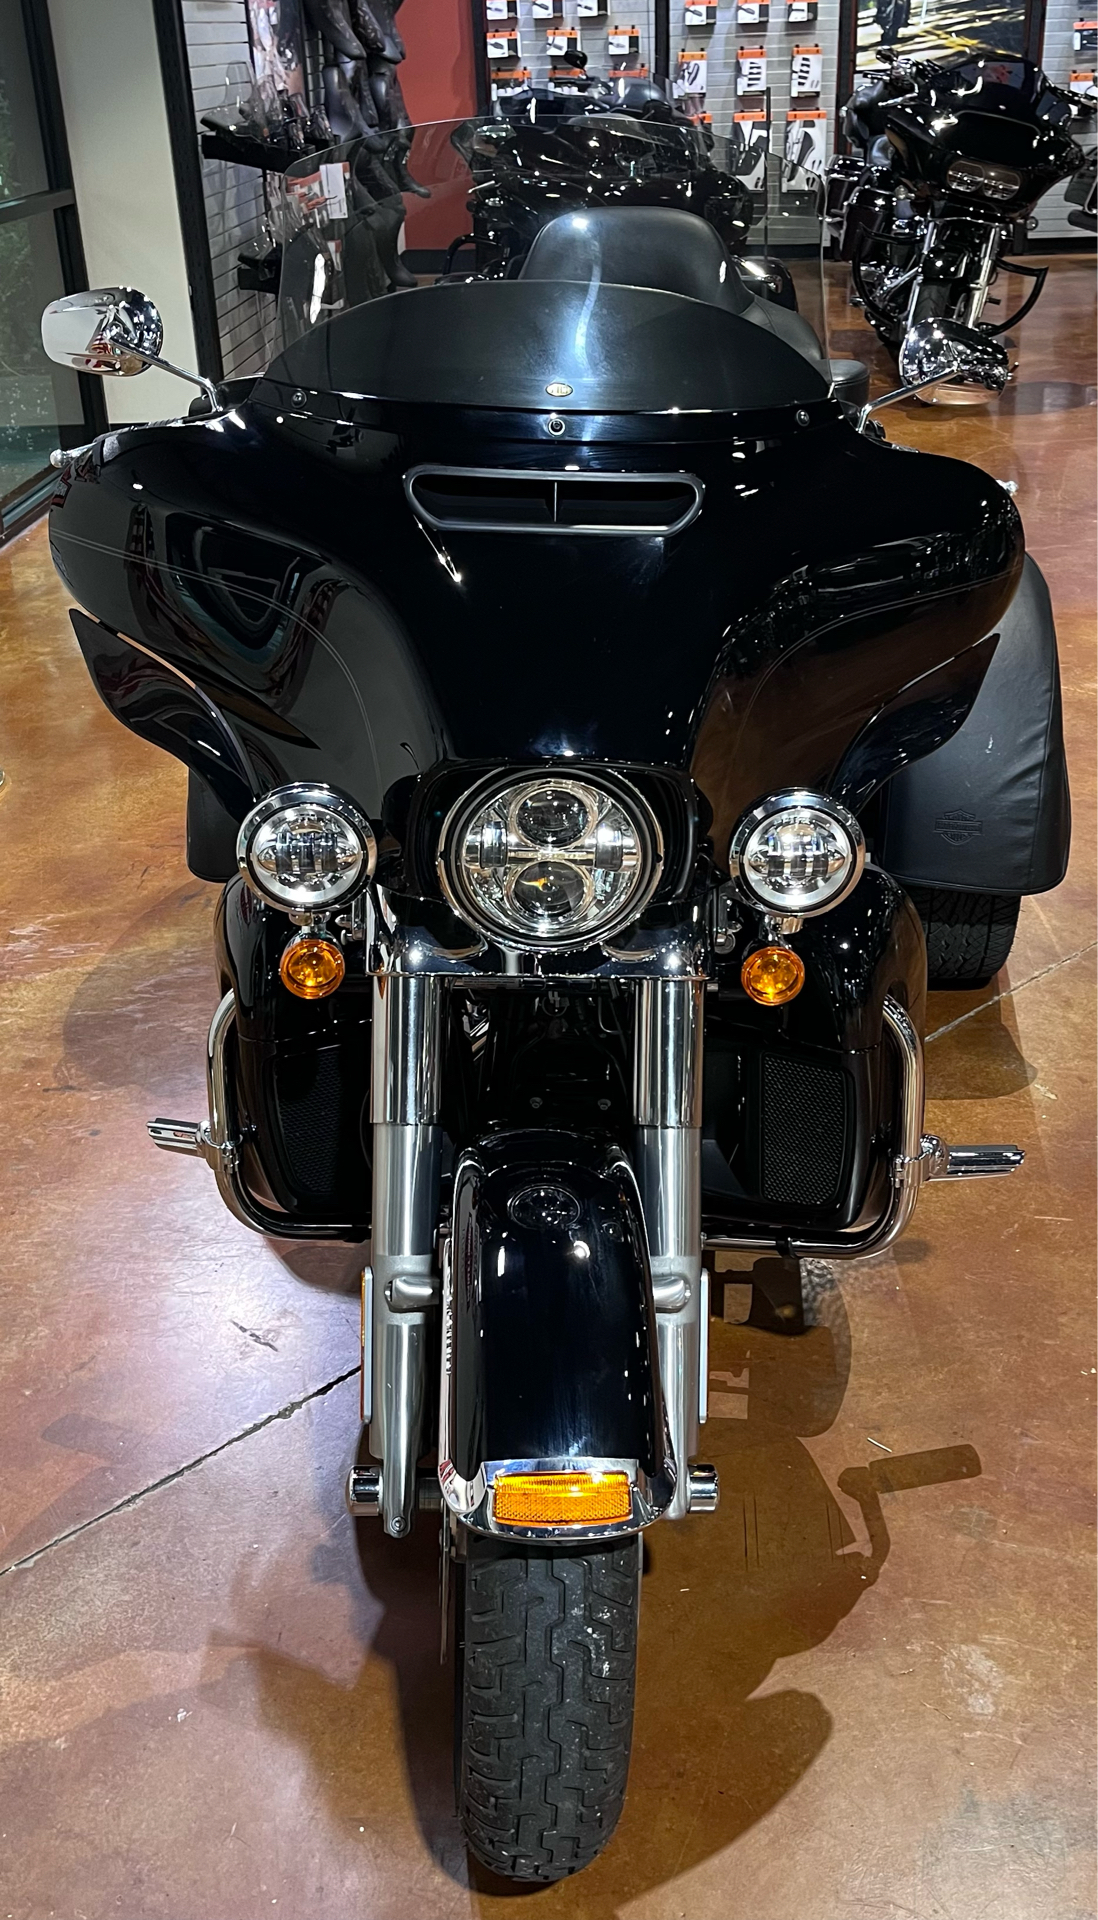 2019 Harley-Davidson Tri Glide near me - Photo 5